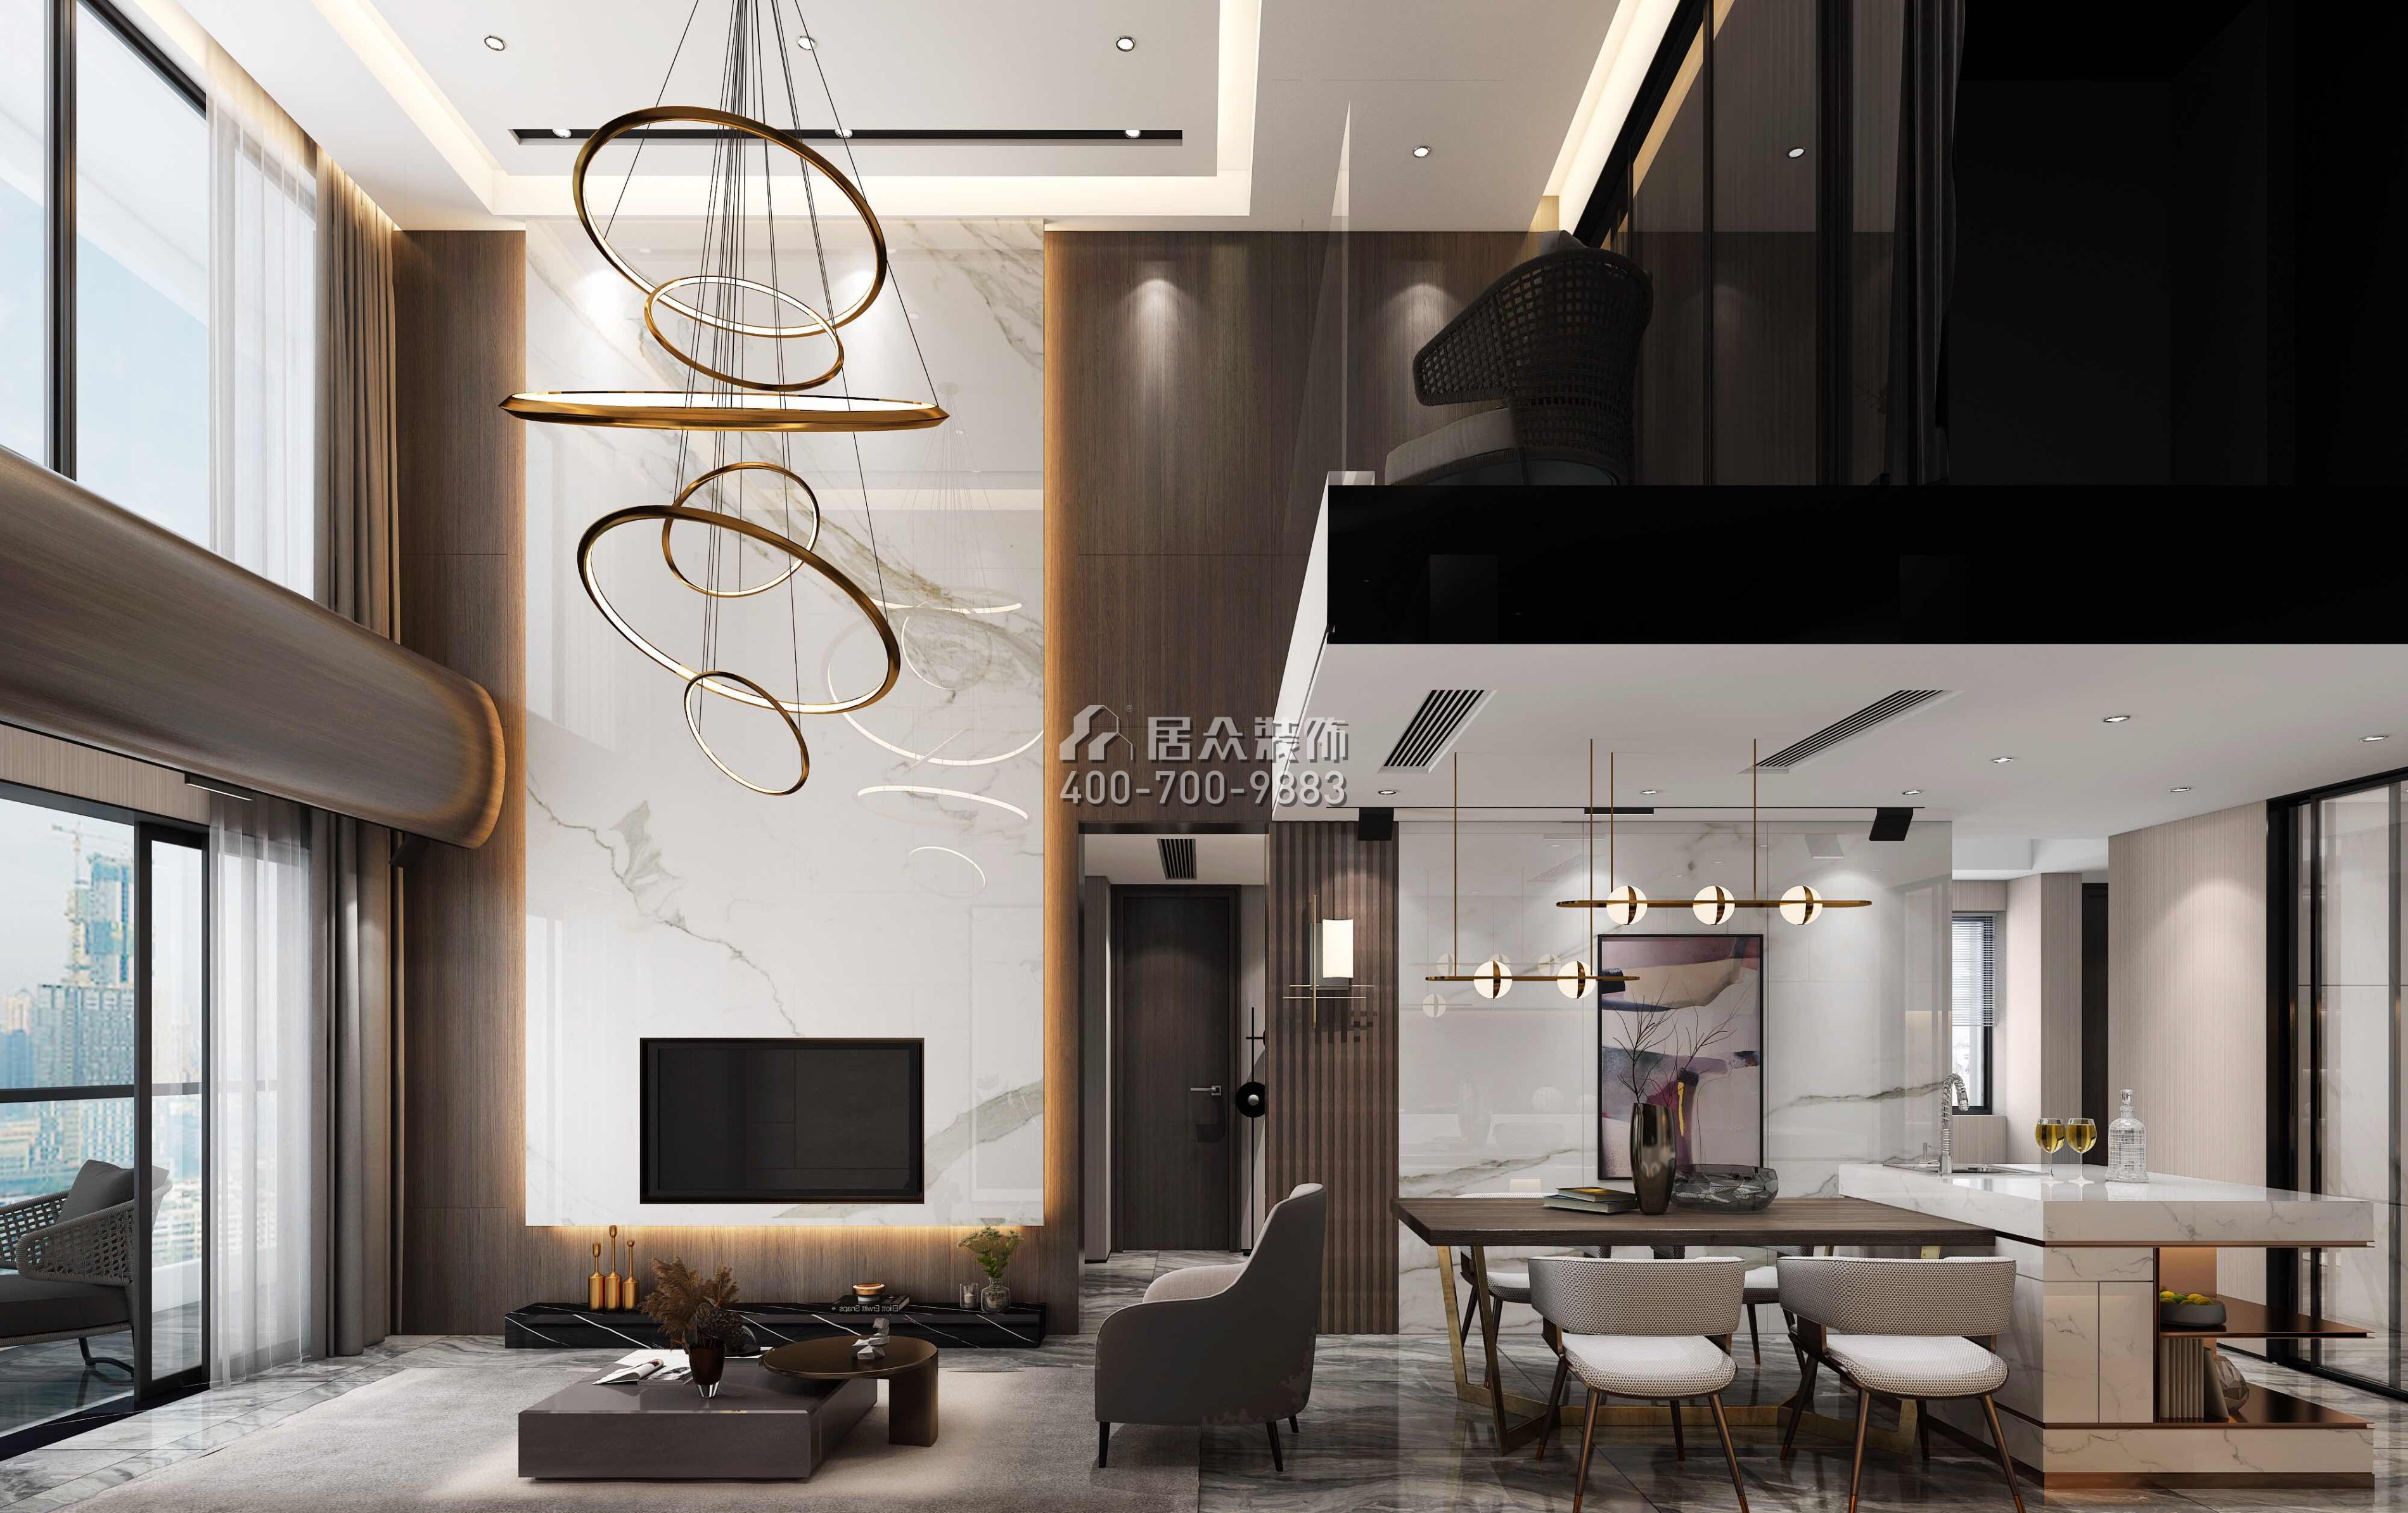 佳兆业城市广场220平方米现代简约风格复式户型客餐厅一体装修效果图